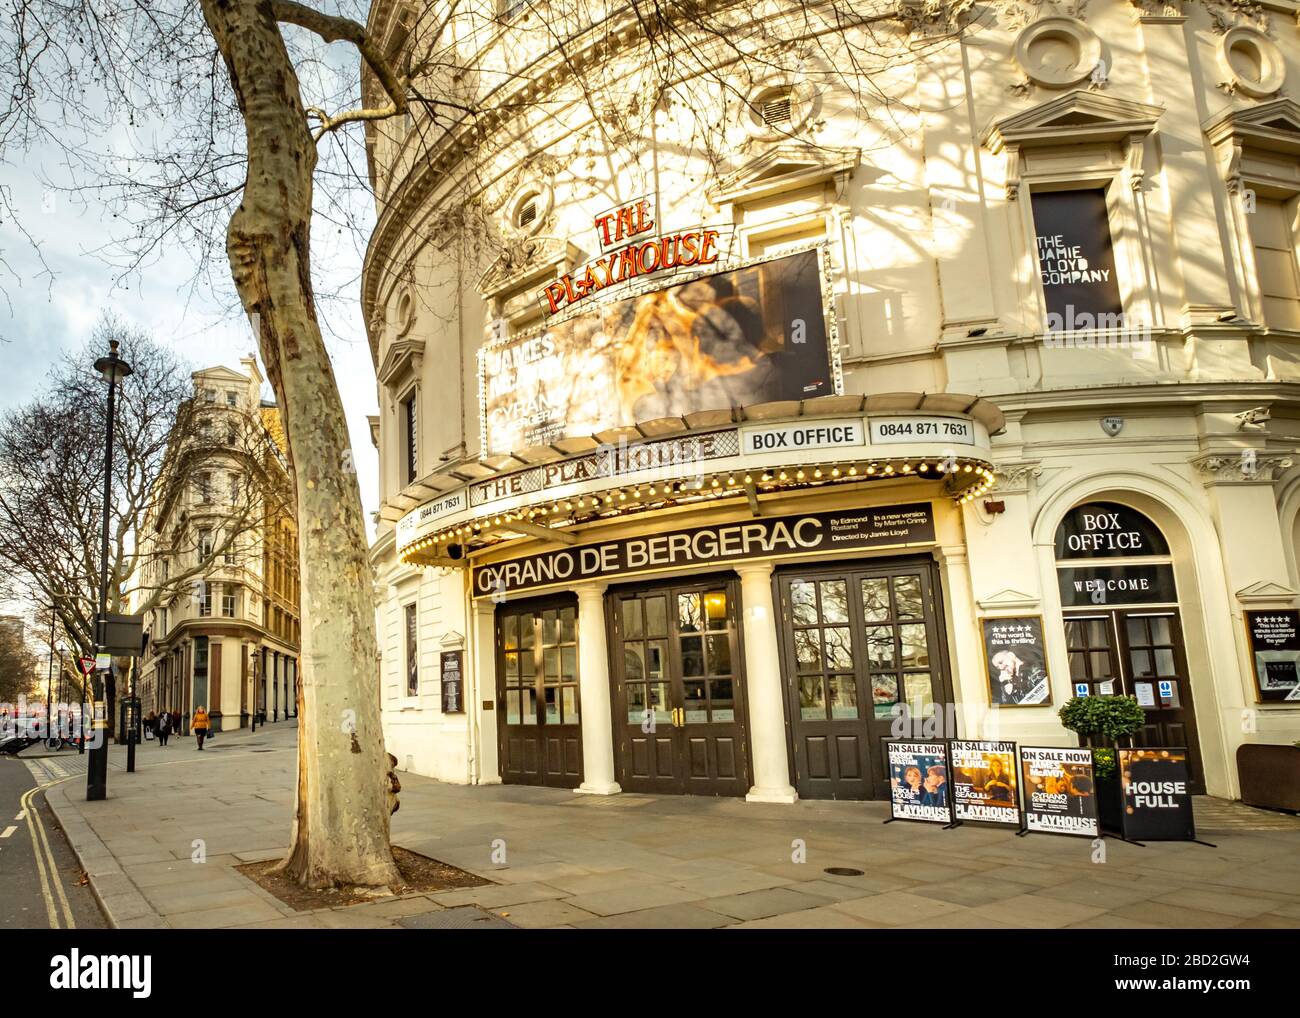 LONDON - MÄRZ 2019: Playhouse Theatre in der Nähe des Trafalgar Square im Londoner West End. Zeigt derzeit den Cyrano de Bergerac mit James McAvoy Stockfoto